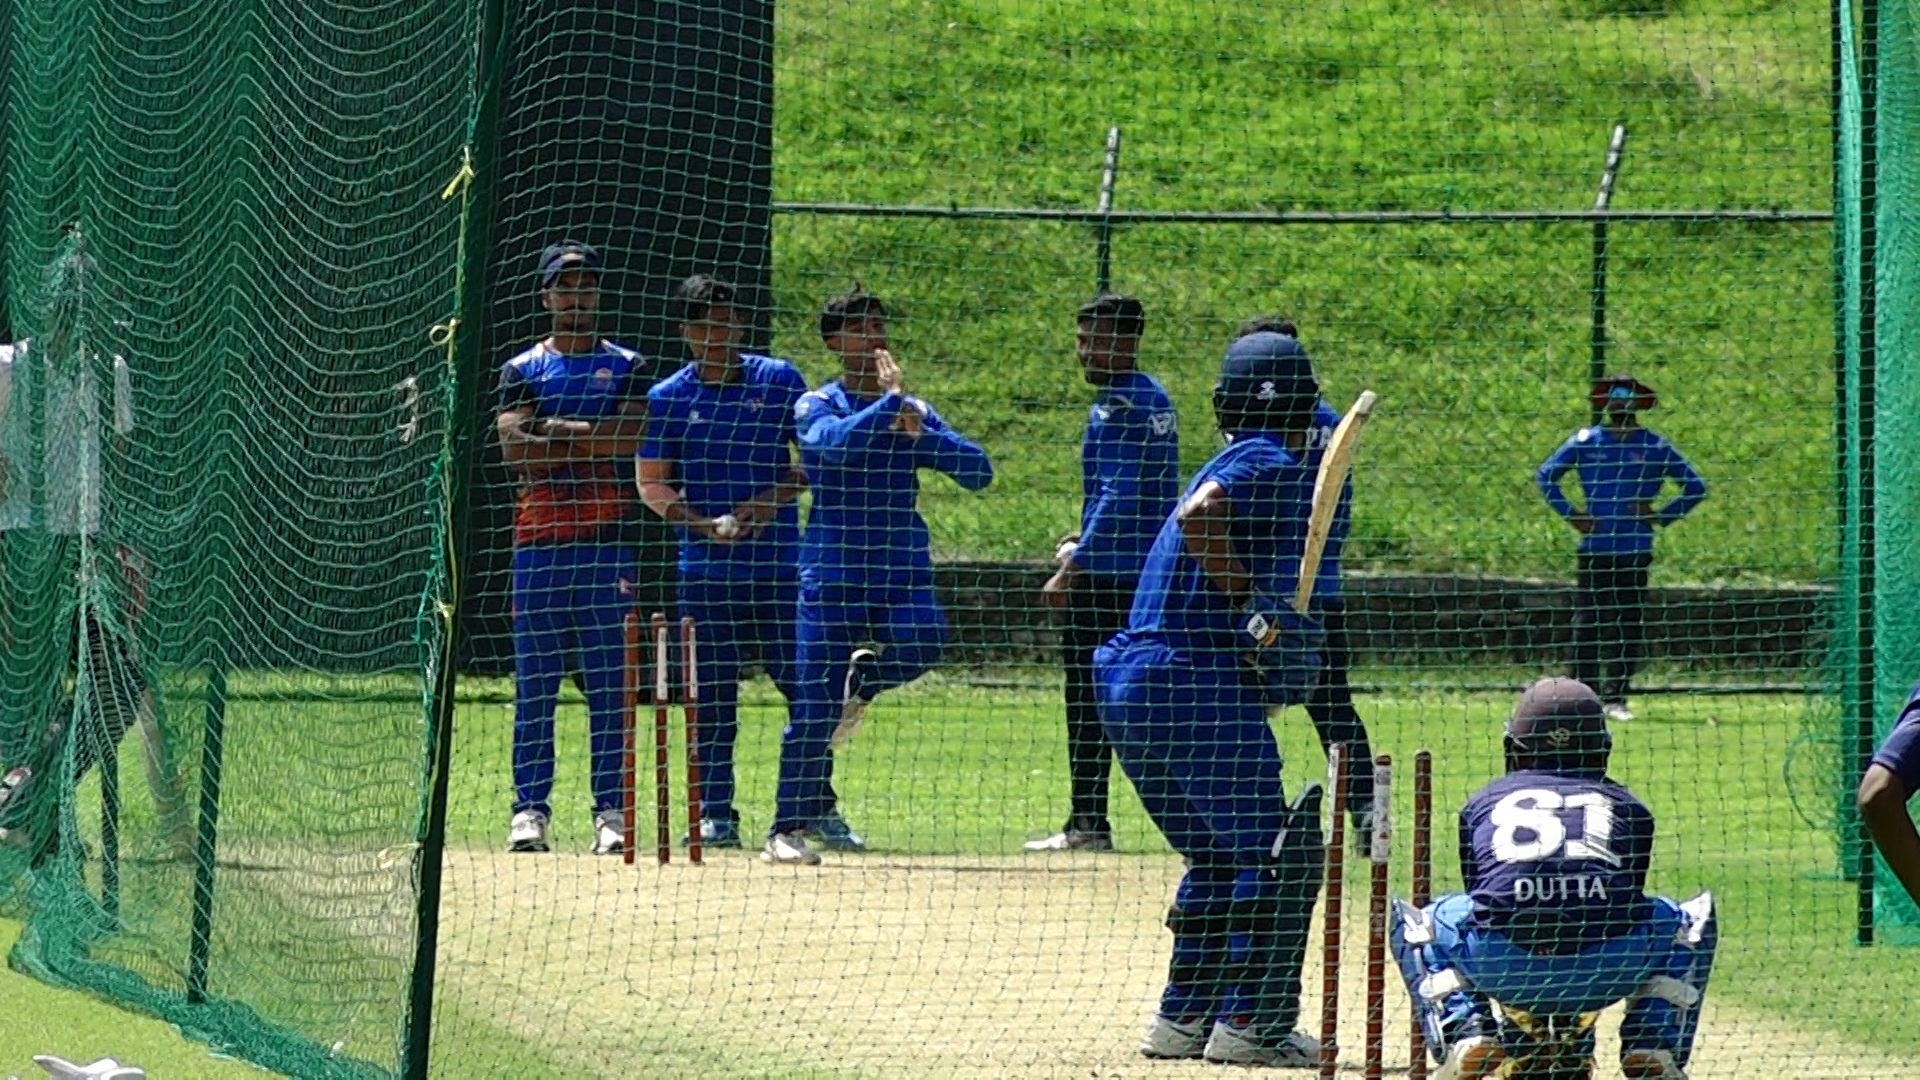 १९औं एसियाडमा नेपाली क्रिकेटको लक्ष्य सुखद् नतिजा